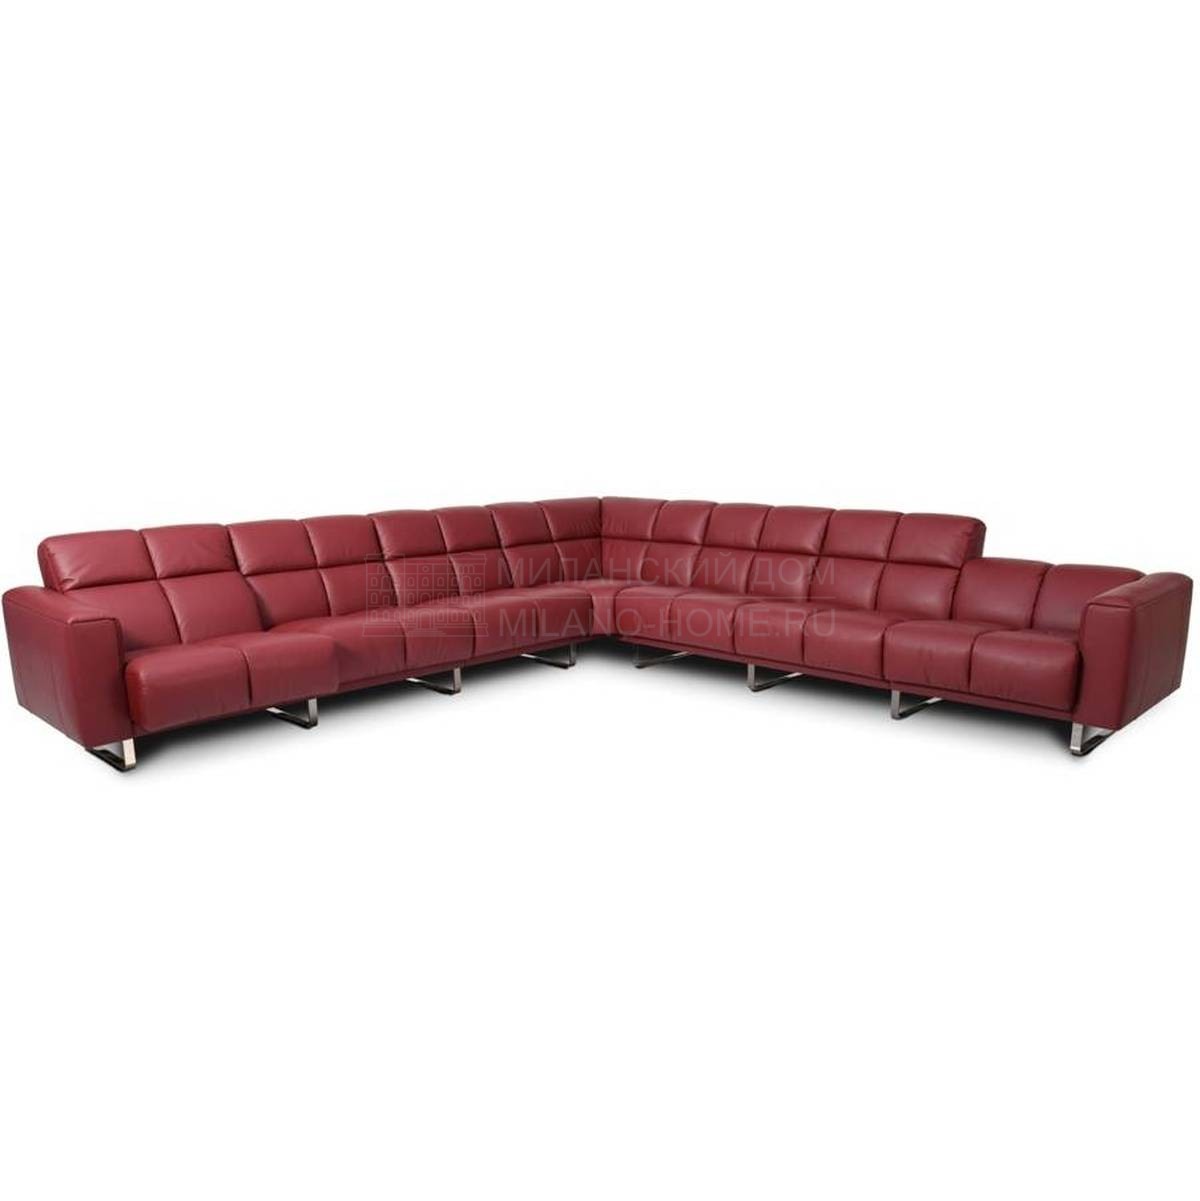 Угловой диван DS-580 modular sofa из Швейцарии фабрики DE SEDE